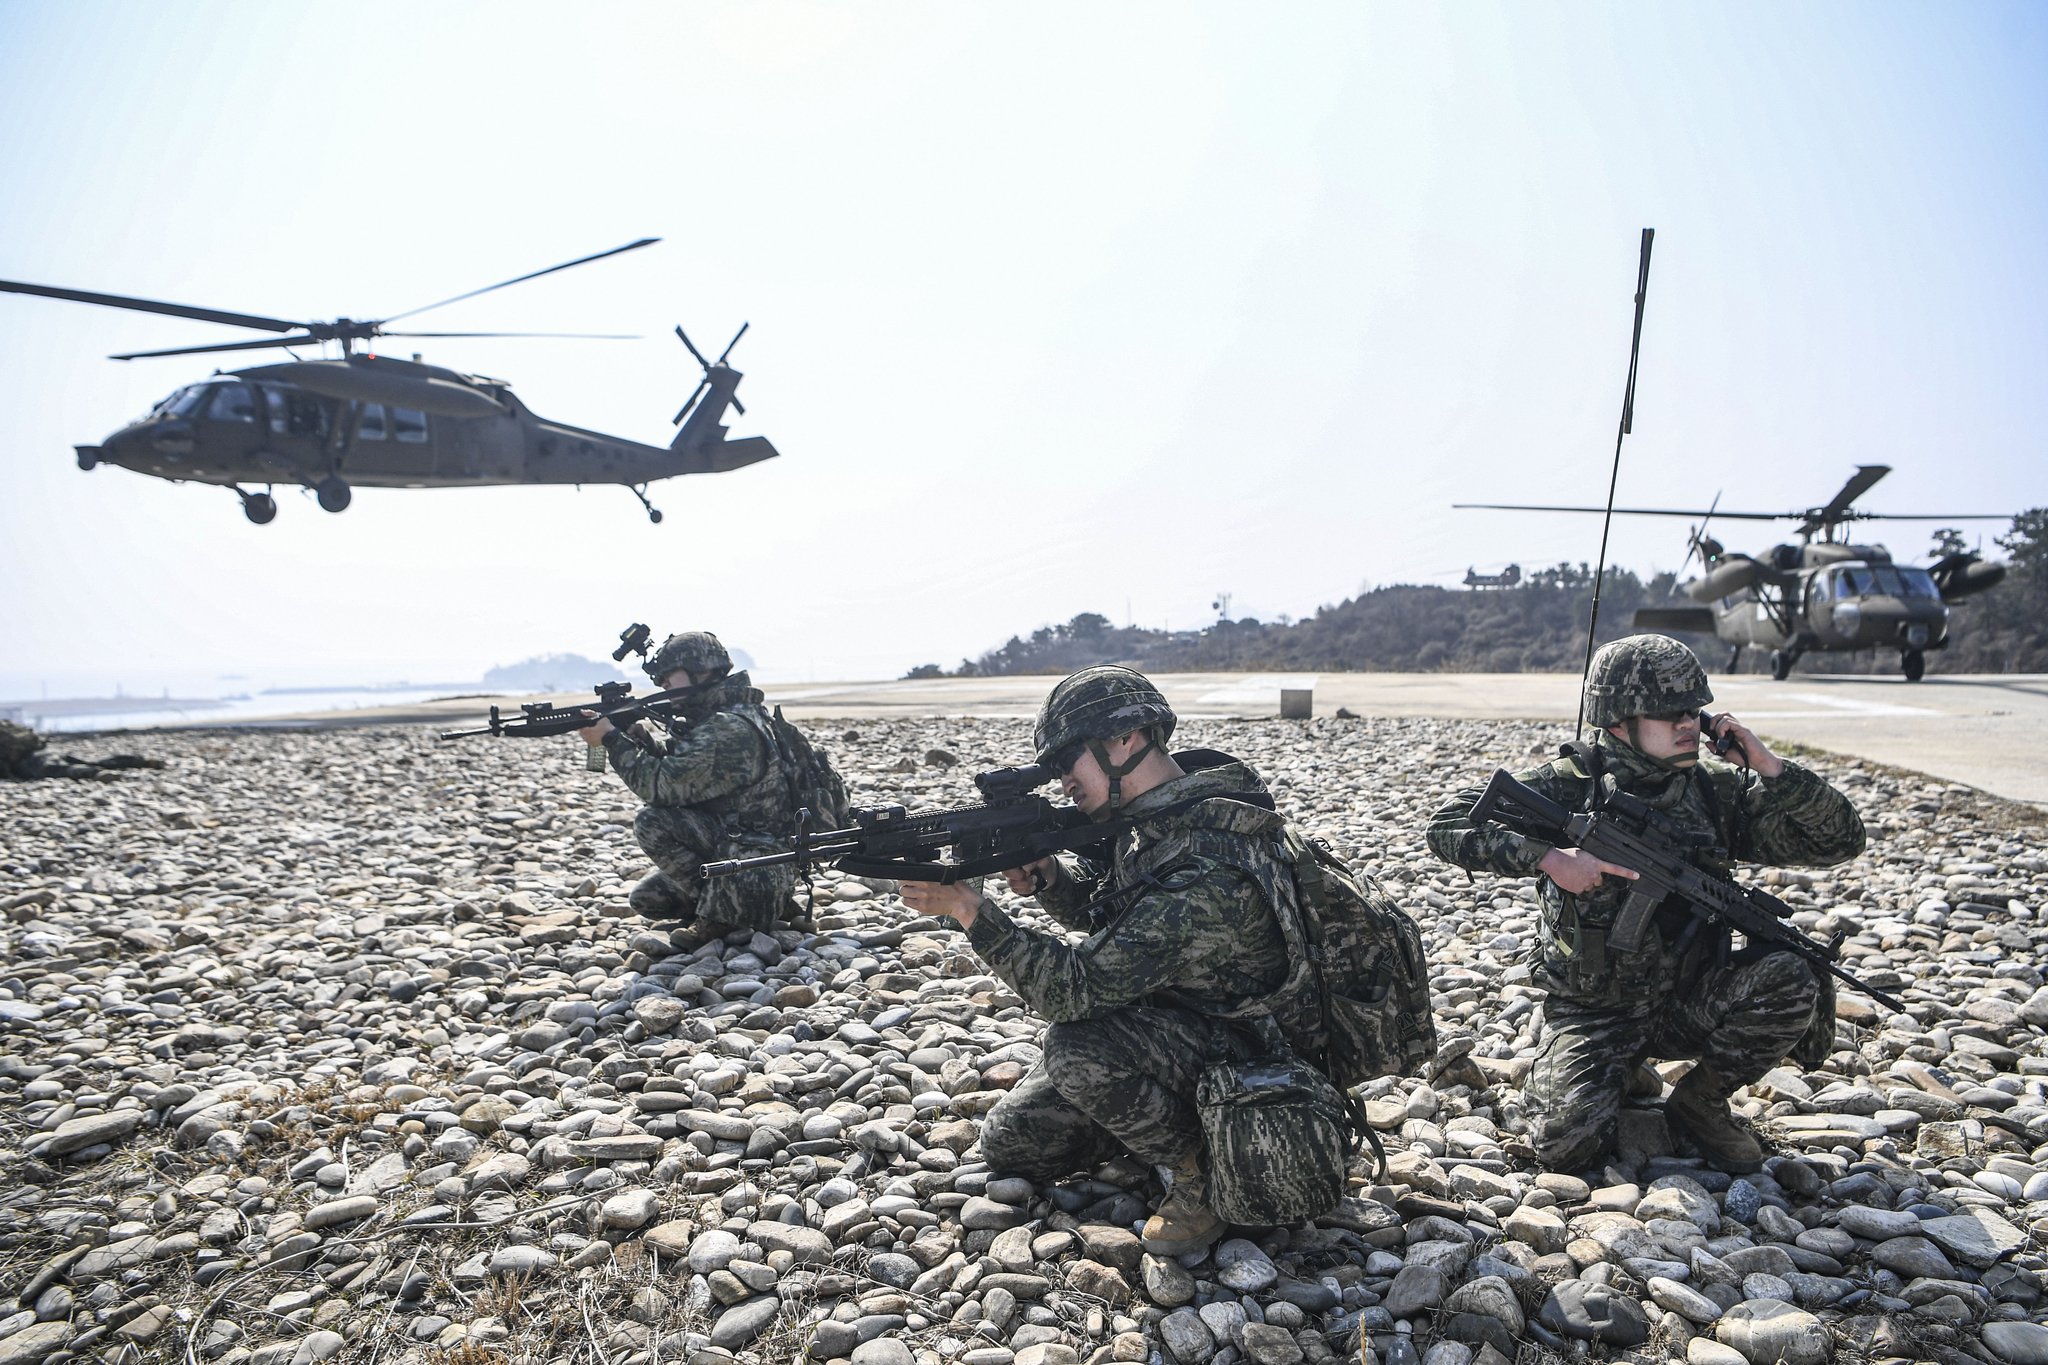 서북도서방위사령부는 지난 15일 적 도발 시 서북도서 방위태세를 완비하기 위해 백령도와 연평도 일대에서 대규모 증원훈련을 실시했다. 공격헬기(AH-64), 기동헬기(CH-47, UH-60)가 연평도 일대에 착륙하여 증원 절차를 숙달하고 있다. 사진 해병대사령부